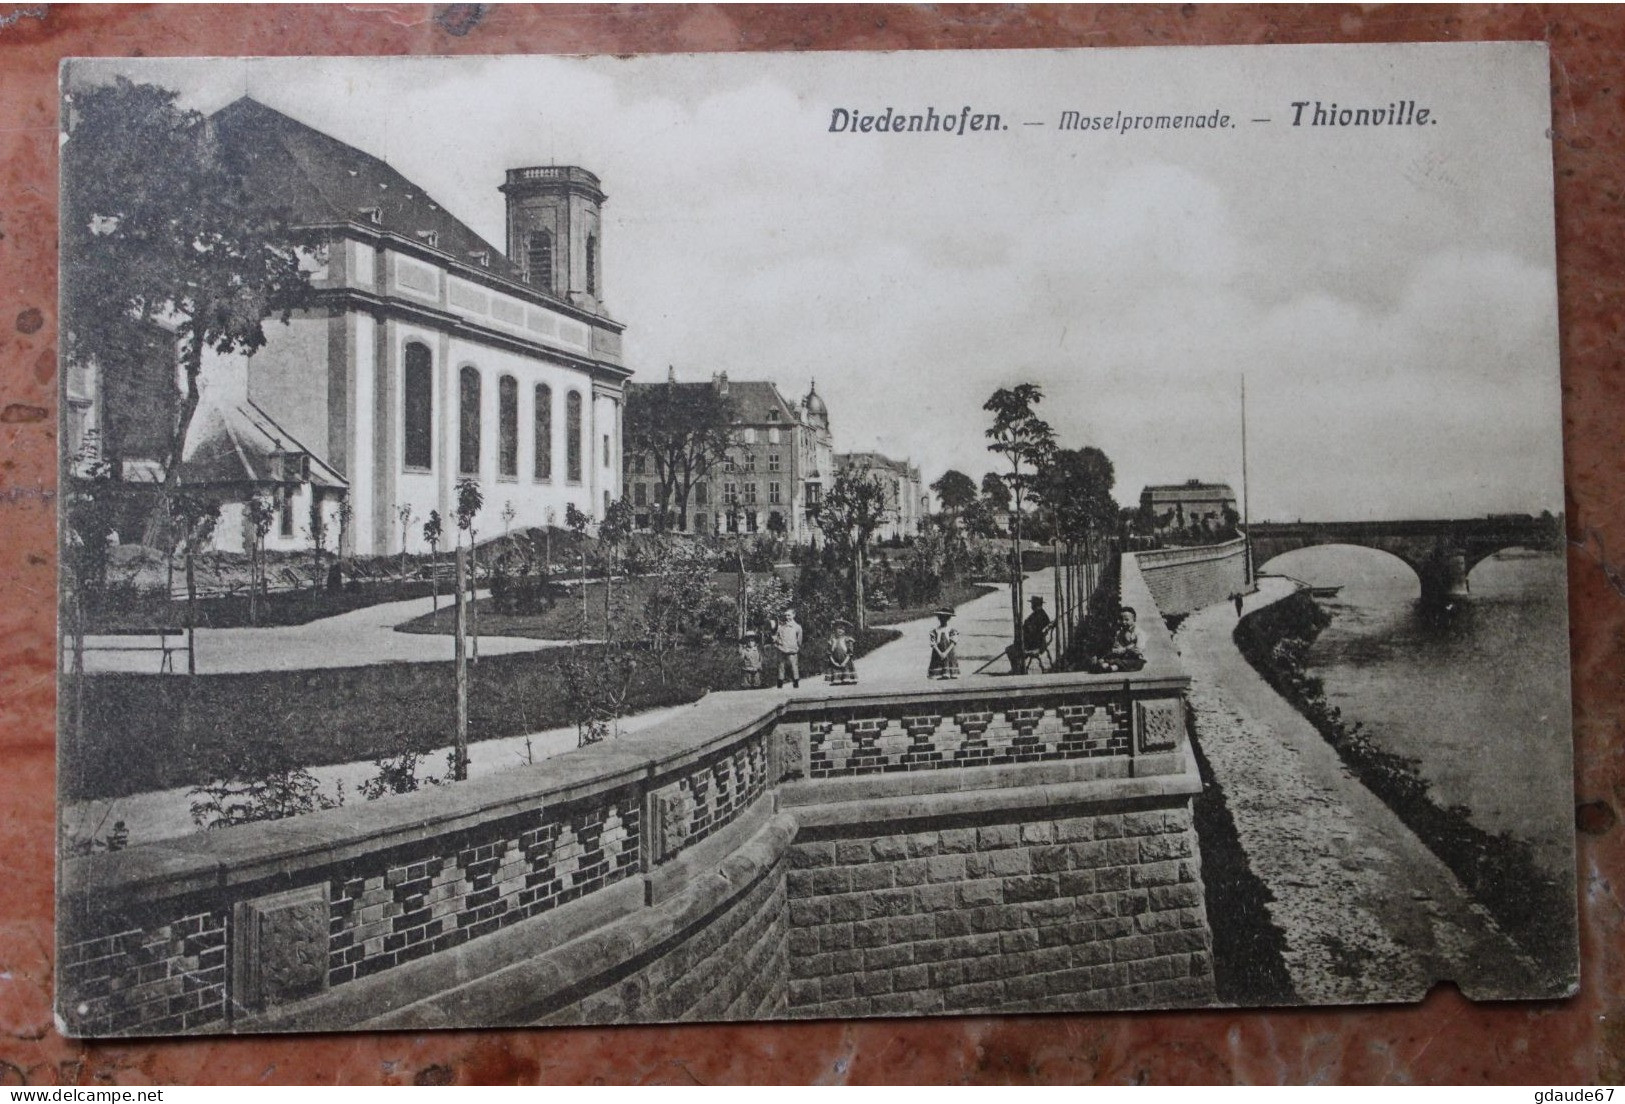 THIONVILLE / DIEDENHOFEN (57) - MOSELPROMENADE - Thionville